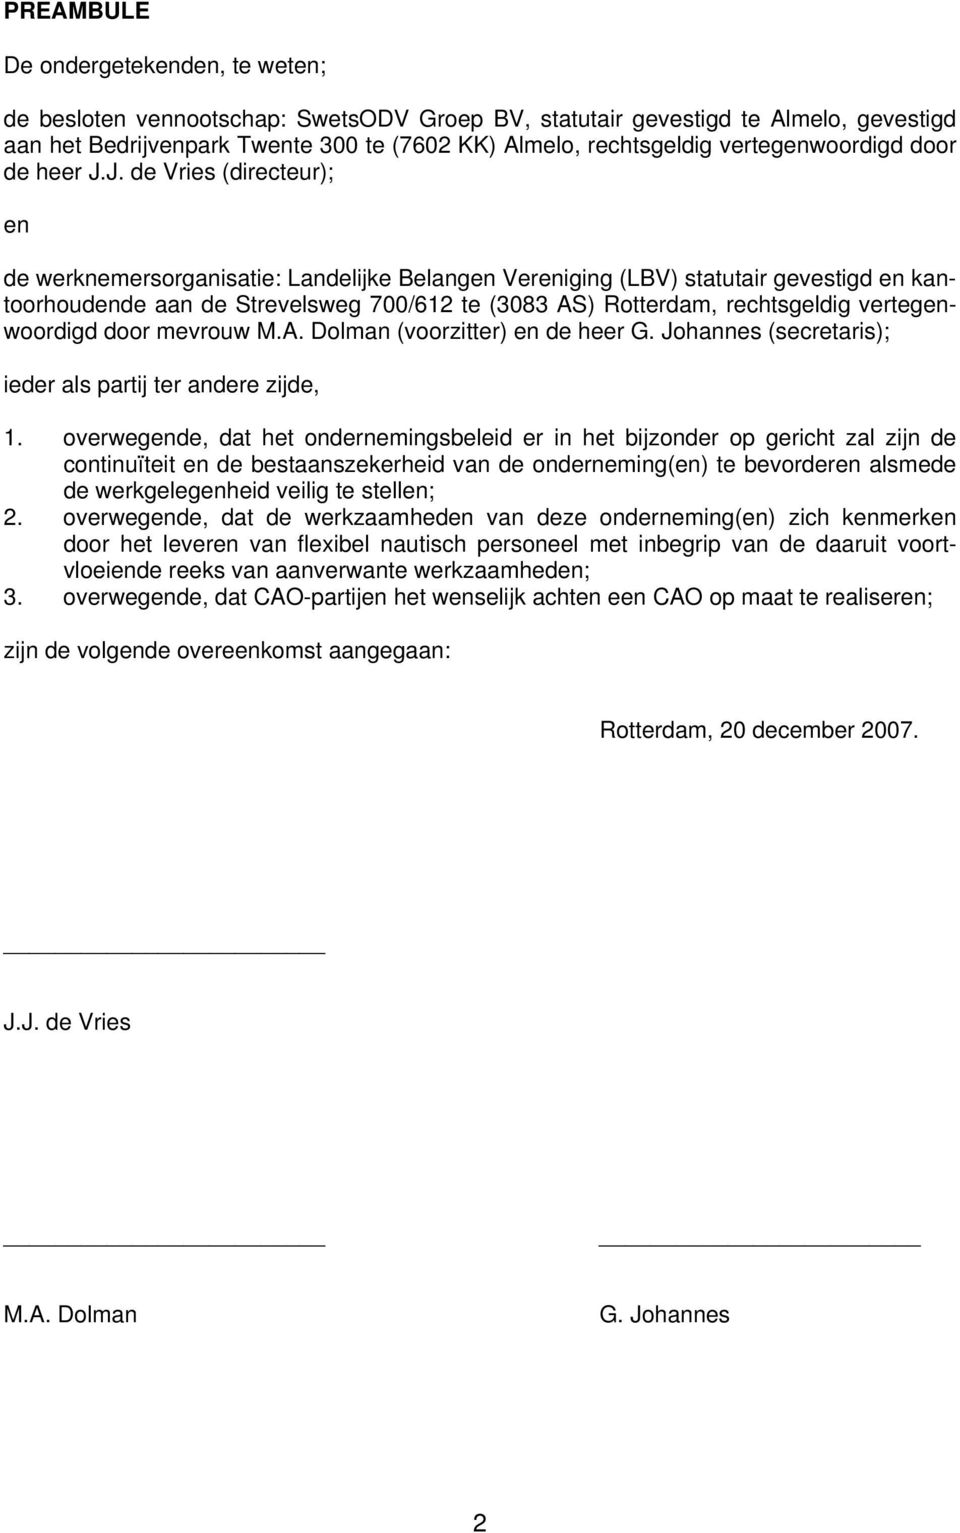 J. de Vries (directeur); en de werknemersorganisatie: Landelijke Belangen Vereniging (LBV) statutair gevestigd en kantoorhoudende aan de Strevelsweg 700/612 te (3083 AS) Rotterdam, rechtsgeldig